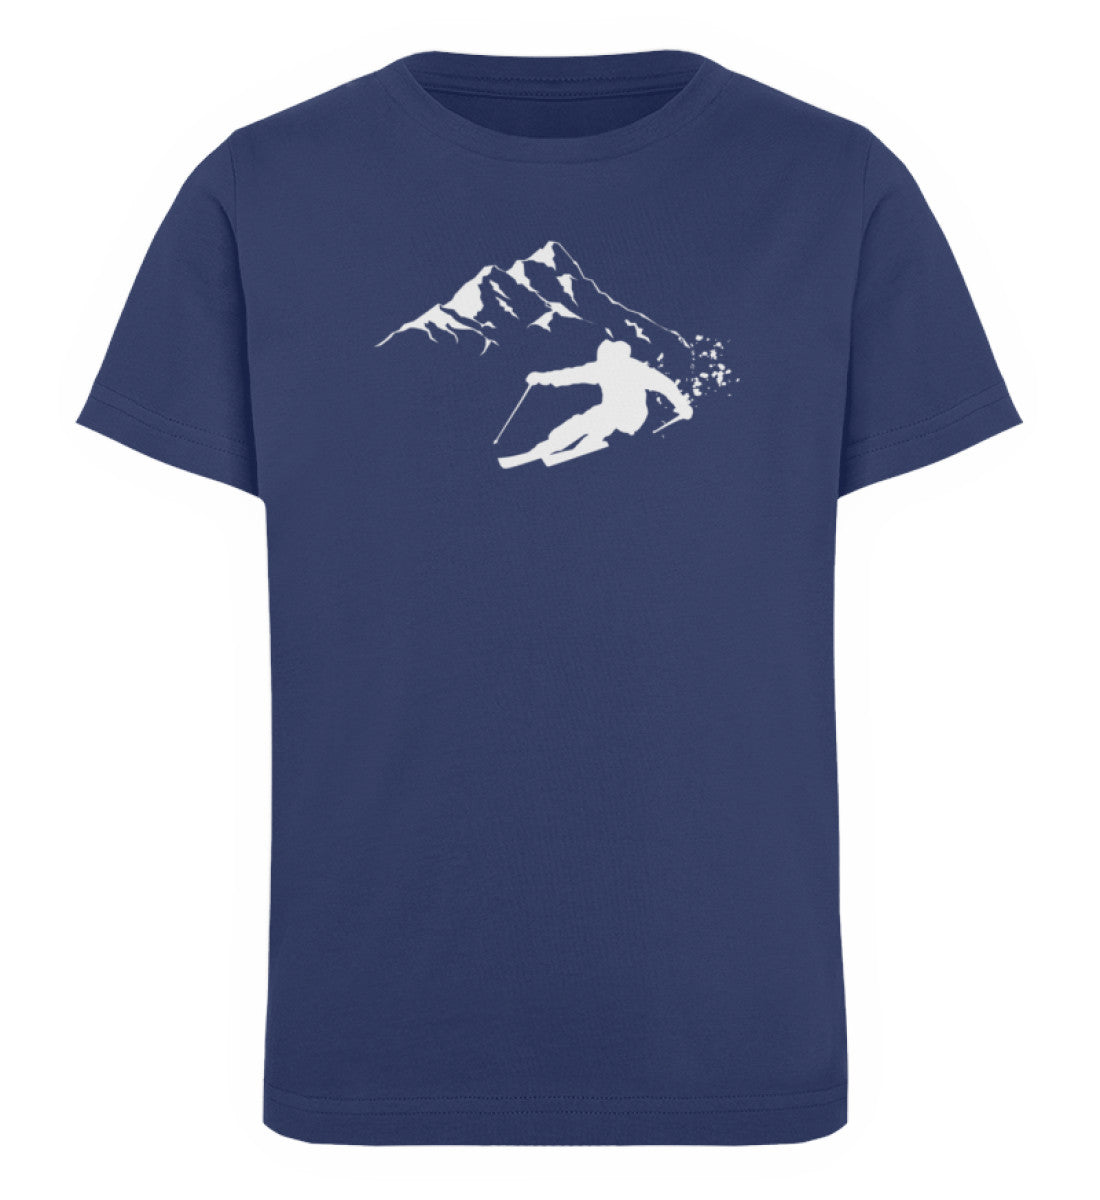 Tiefschnee Skier - Kinder Premium Organic T-Shirt Navyblau